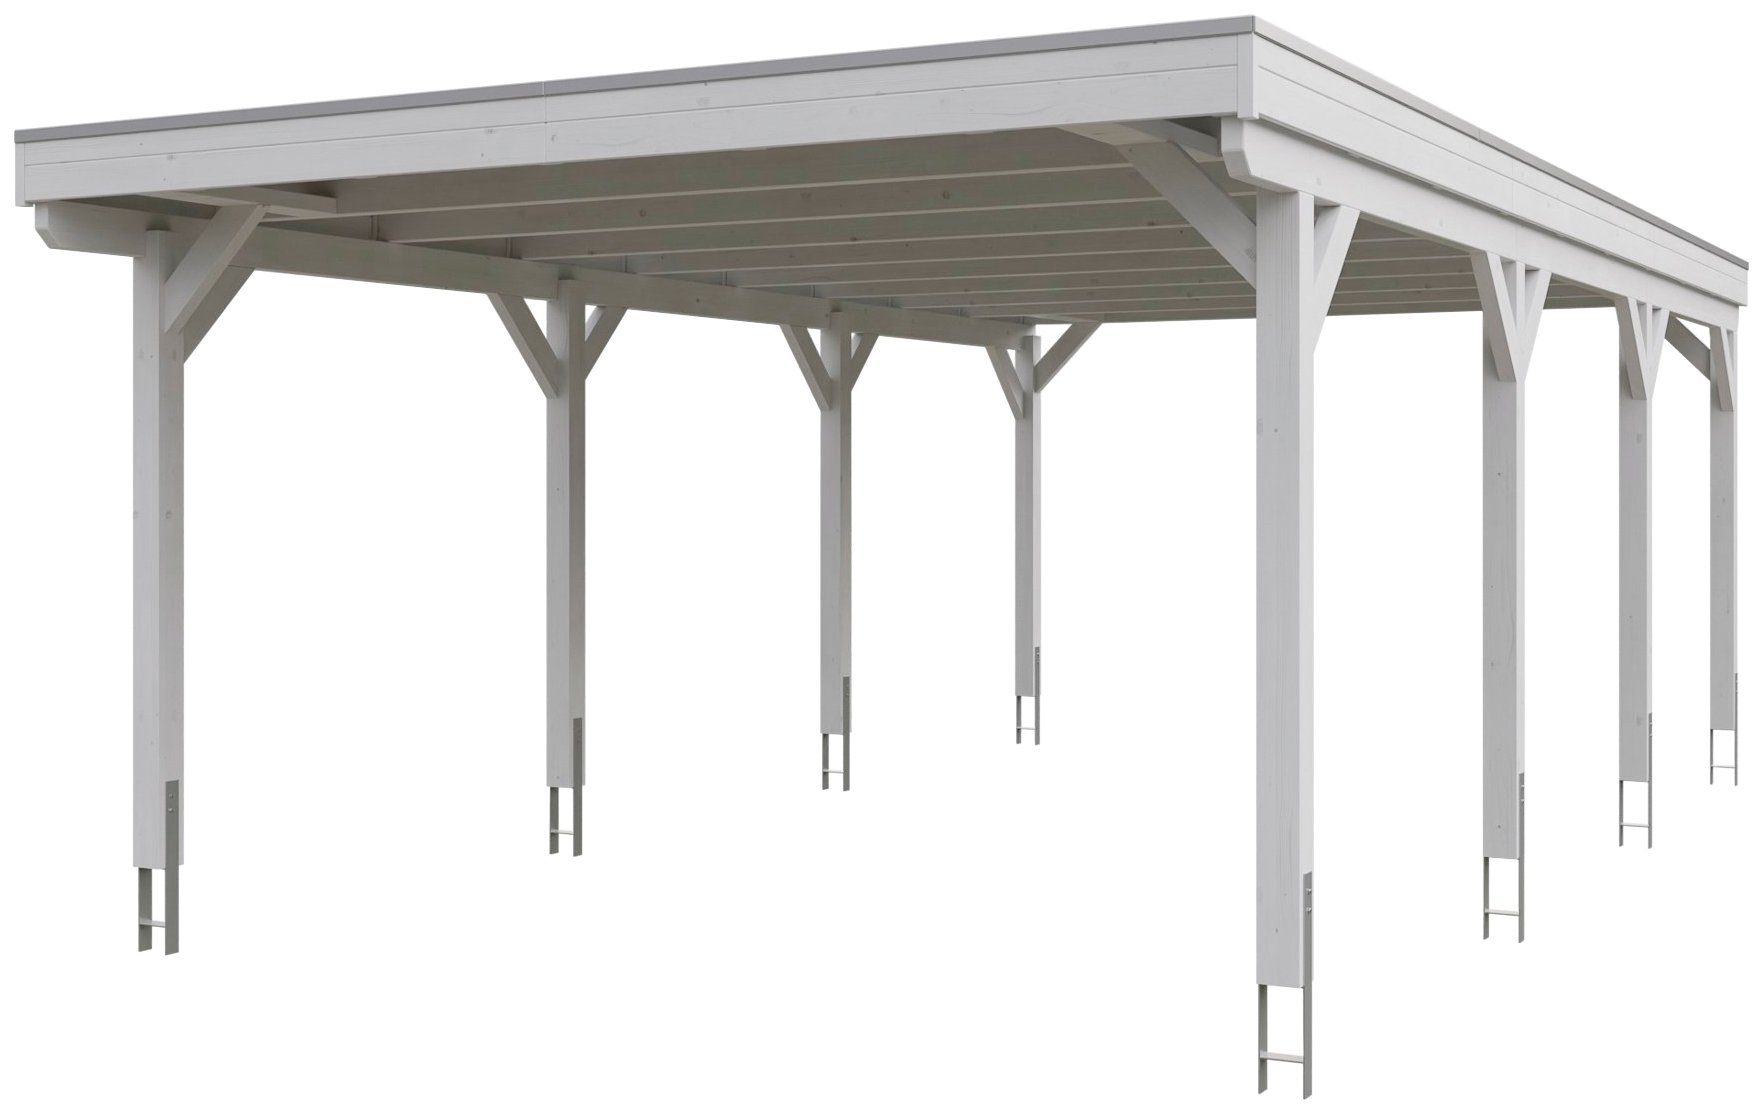 Skanholz Einzelcarport Grunewald, BxT: 427x796 cm, 395 cm Einfahrtshöhe,  mit EPDM-Dach, Flachdach-Carport, farblich behandelt in weiß